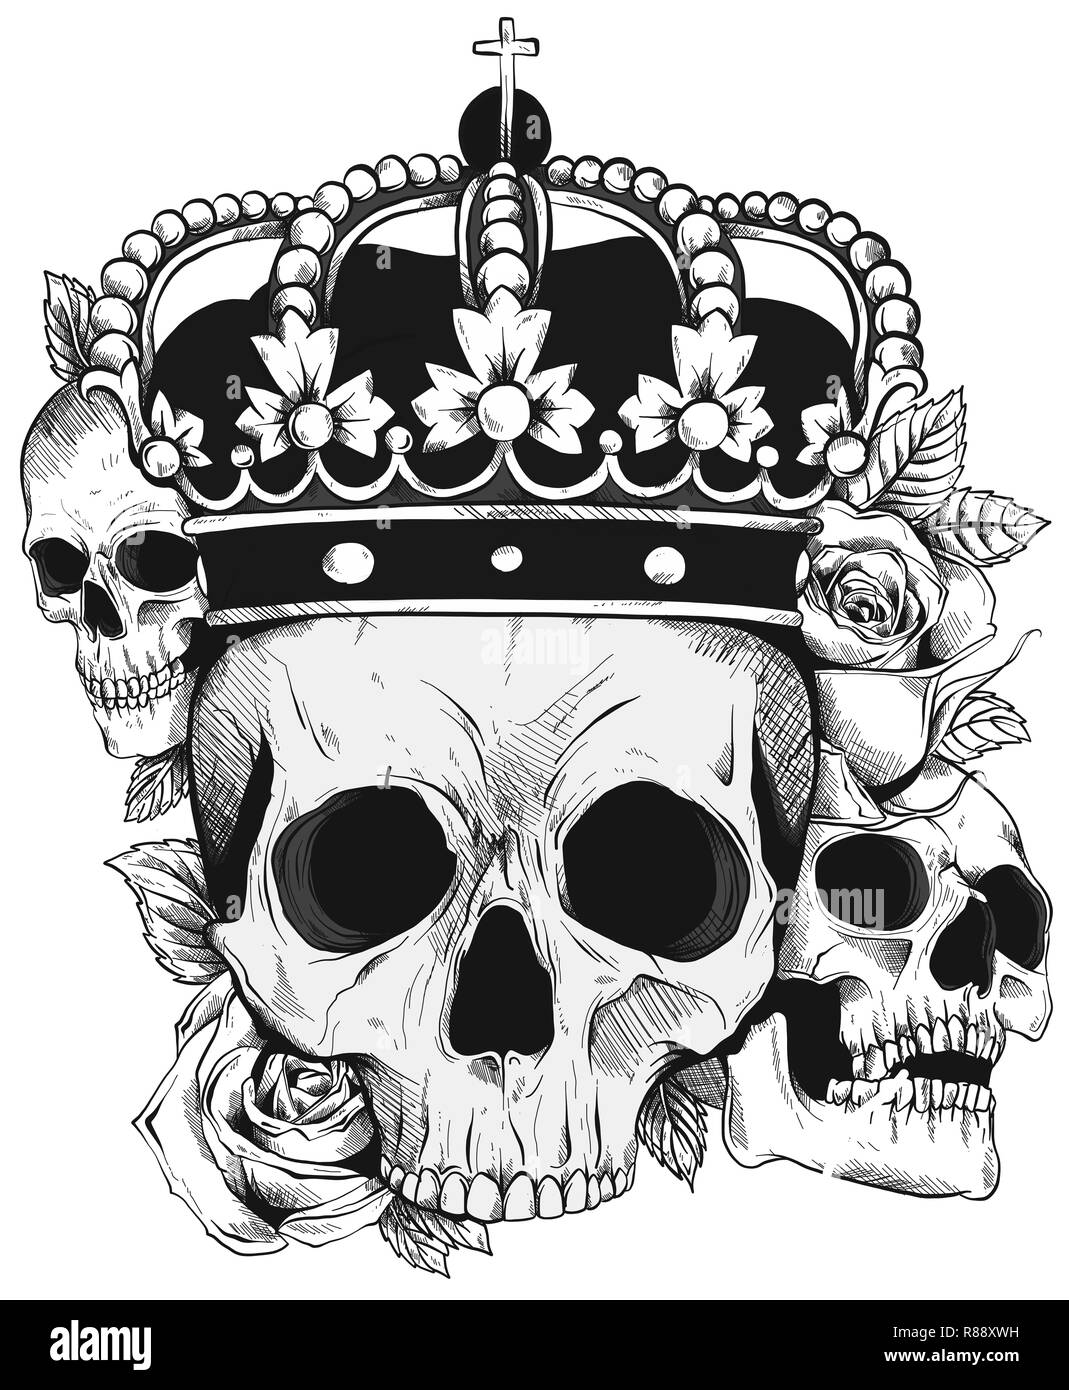 Noir et blanc graphique crâne humain avec royal lily roi couronne et diamants Banque D'Images